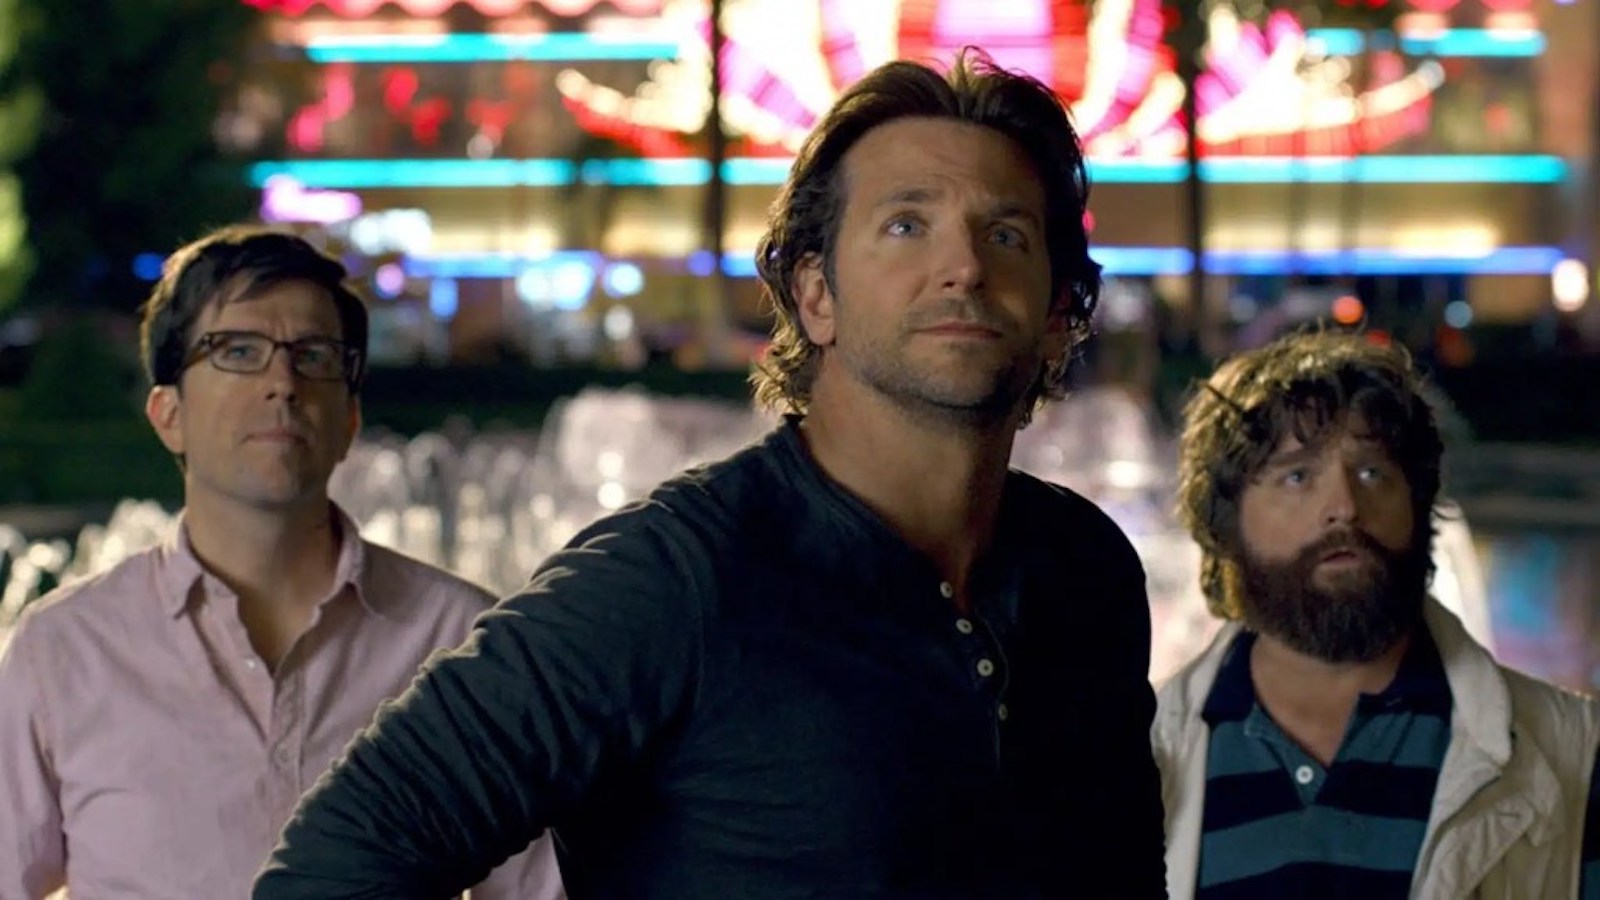 Una notte da leoni 4, Bradley Cooper non ha dubbi: 'Lo farei subito'